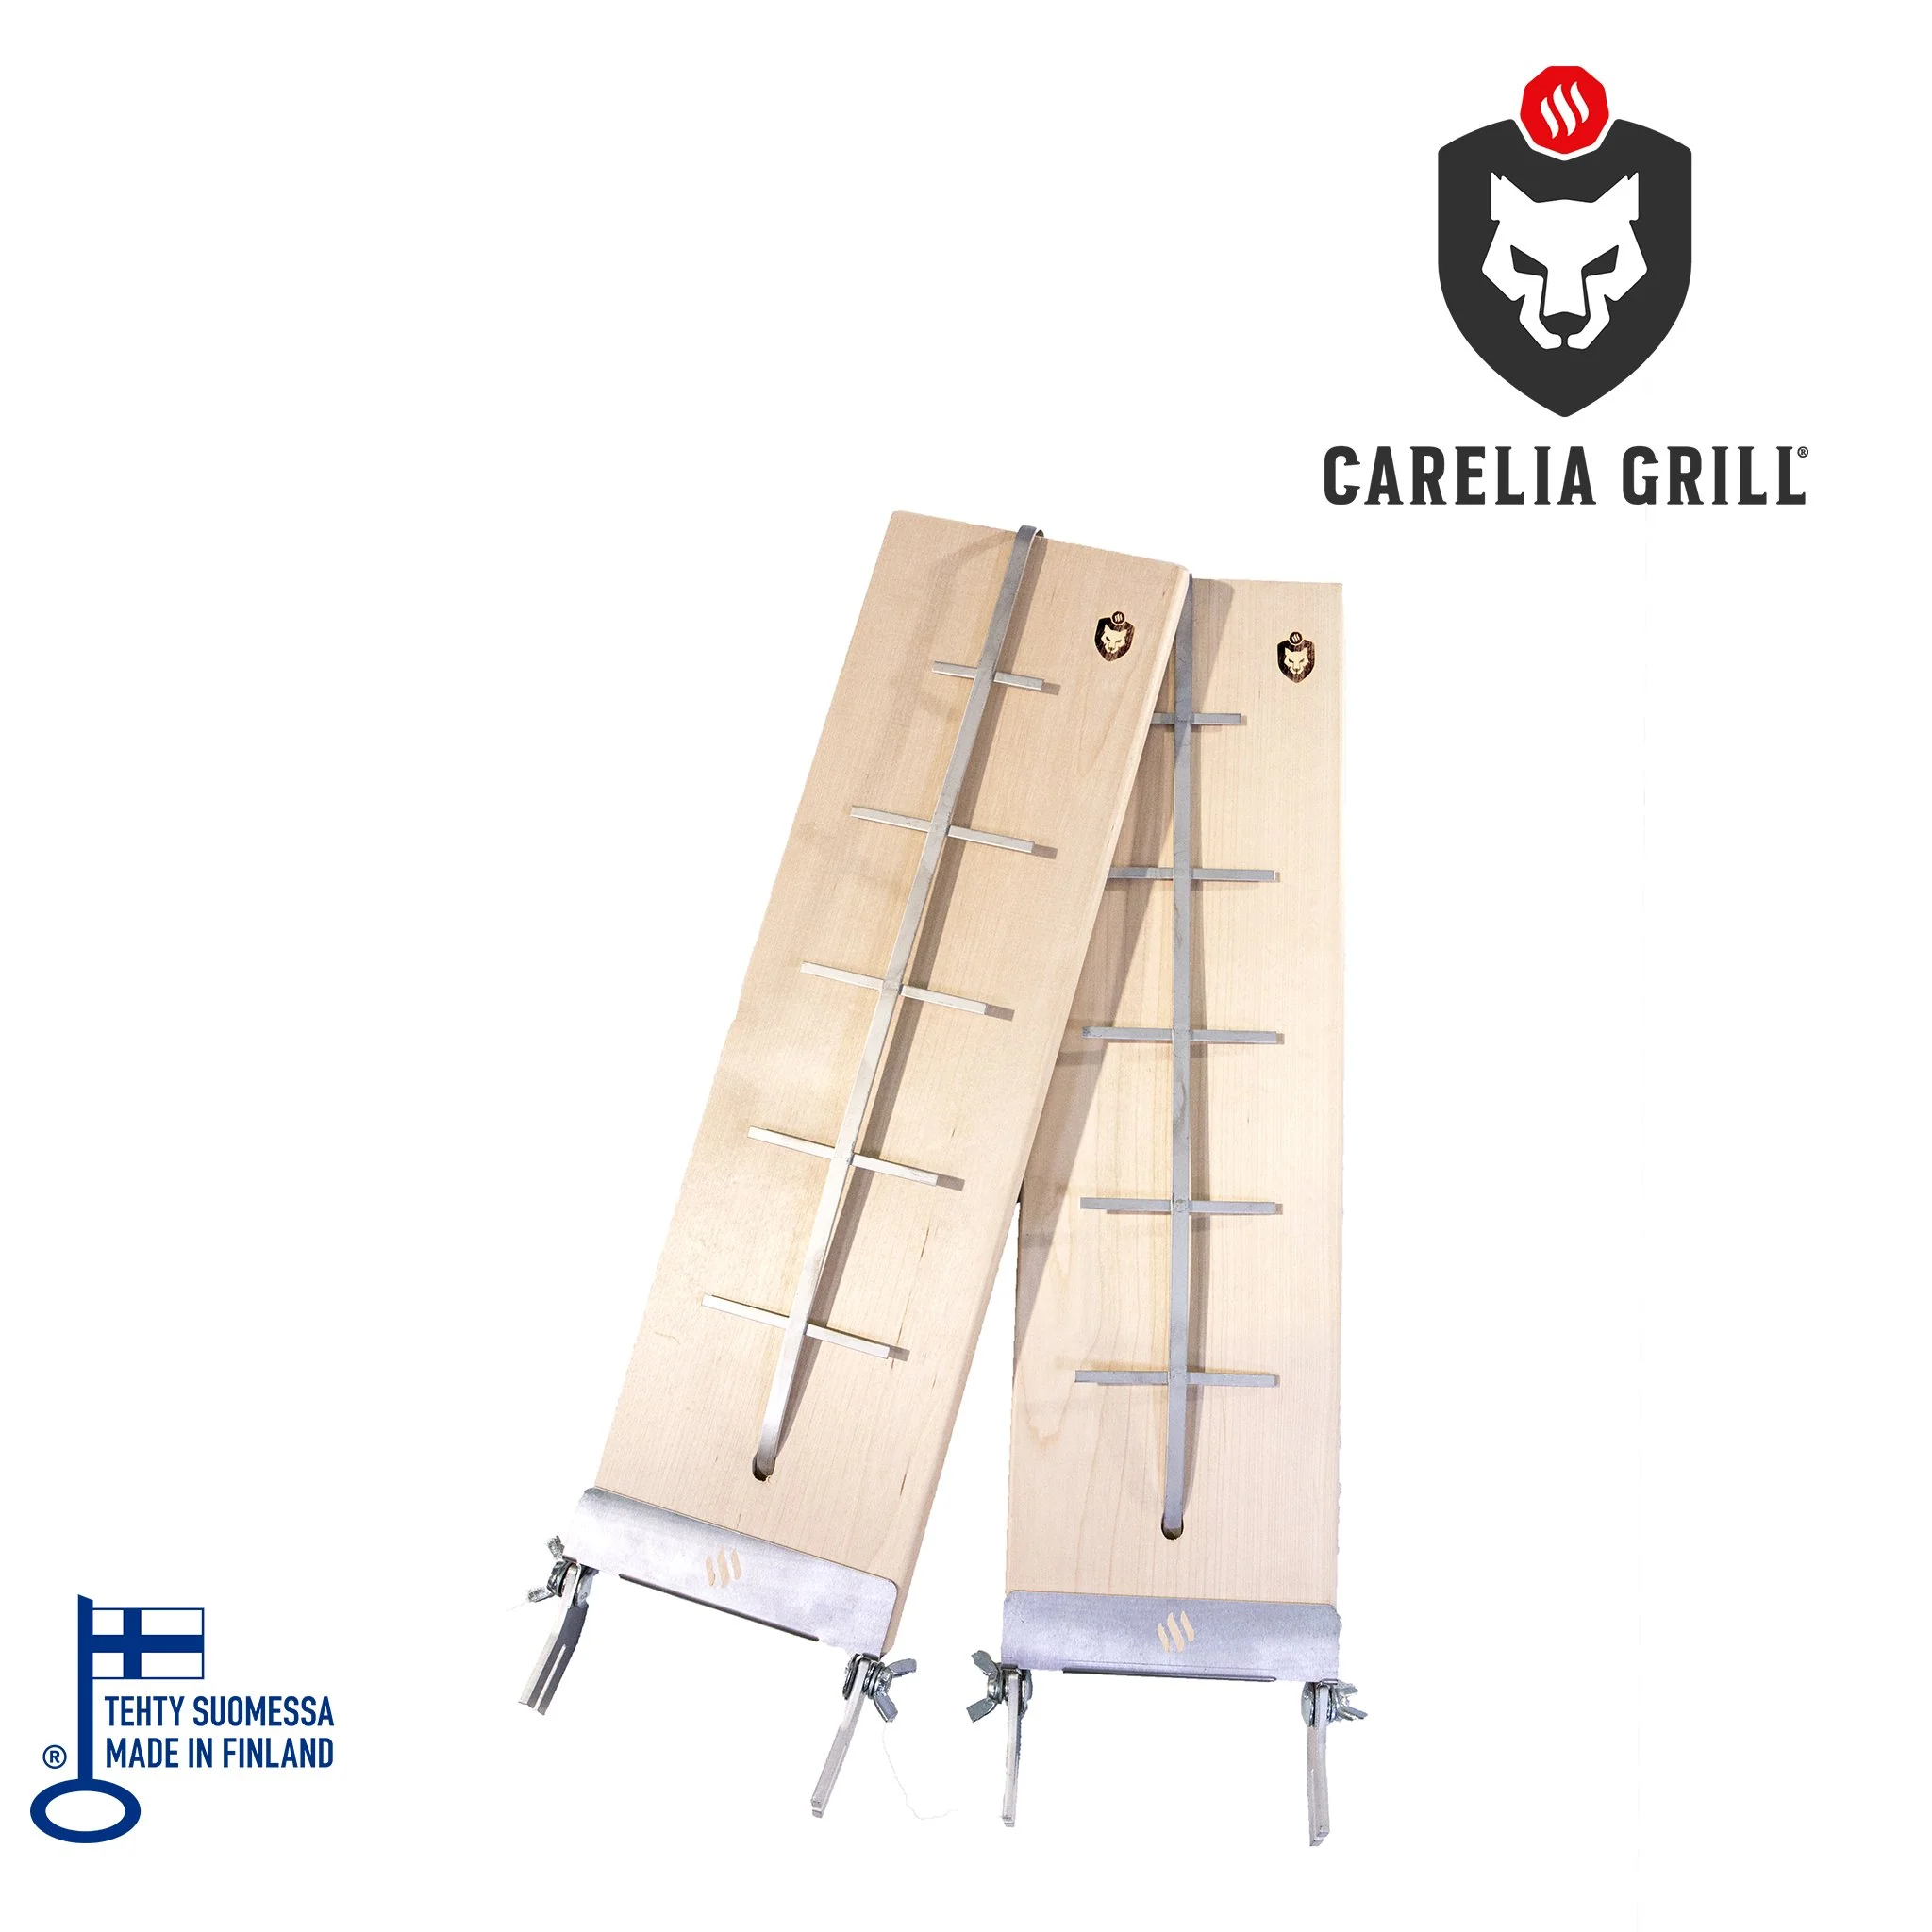 CARELIA GRILL® BLAZING BOARDS (2 PCS)
Leegitamisplaadid CARELIA GRILL® avatud tulekolletele ja väliköökidele, võimaldavad teil valmistada oma lemmikkala või -li